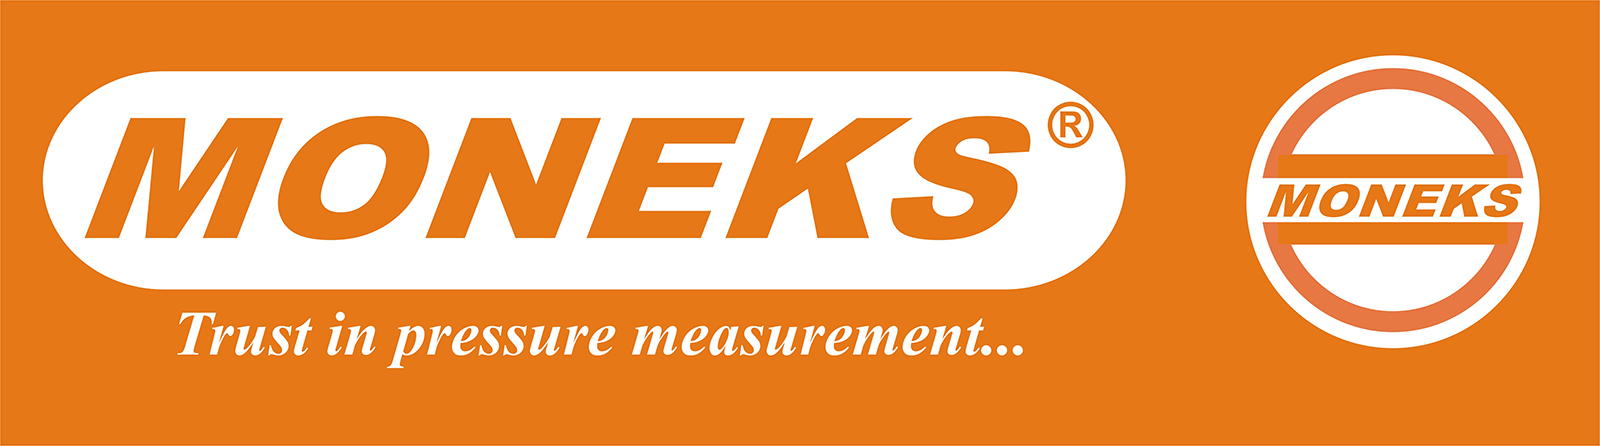 MONEKS logosu, turuncu ve beyaz renklerde, 'Trust in pressure measurement...' sloganıyla birlikte. Logoda 'MONEKS' yazısı büyük harflerle ve markanın basınç ölçüm teknolojilerindeki güvenilirliğine vurgu yapılmaktadır.